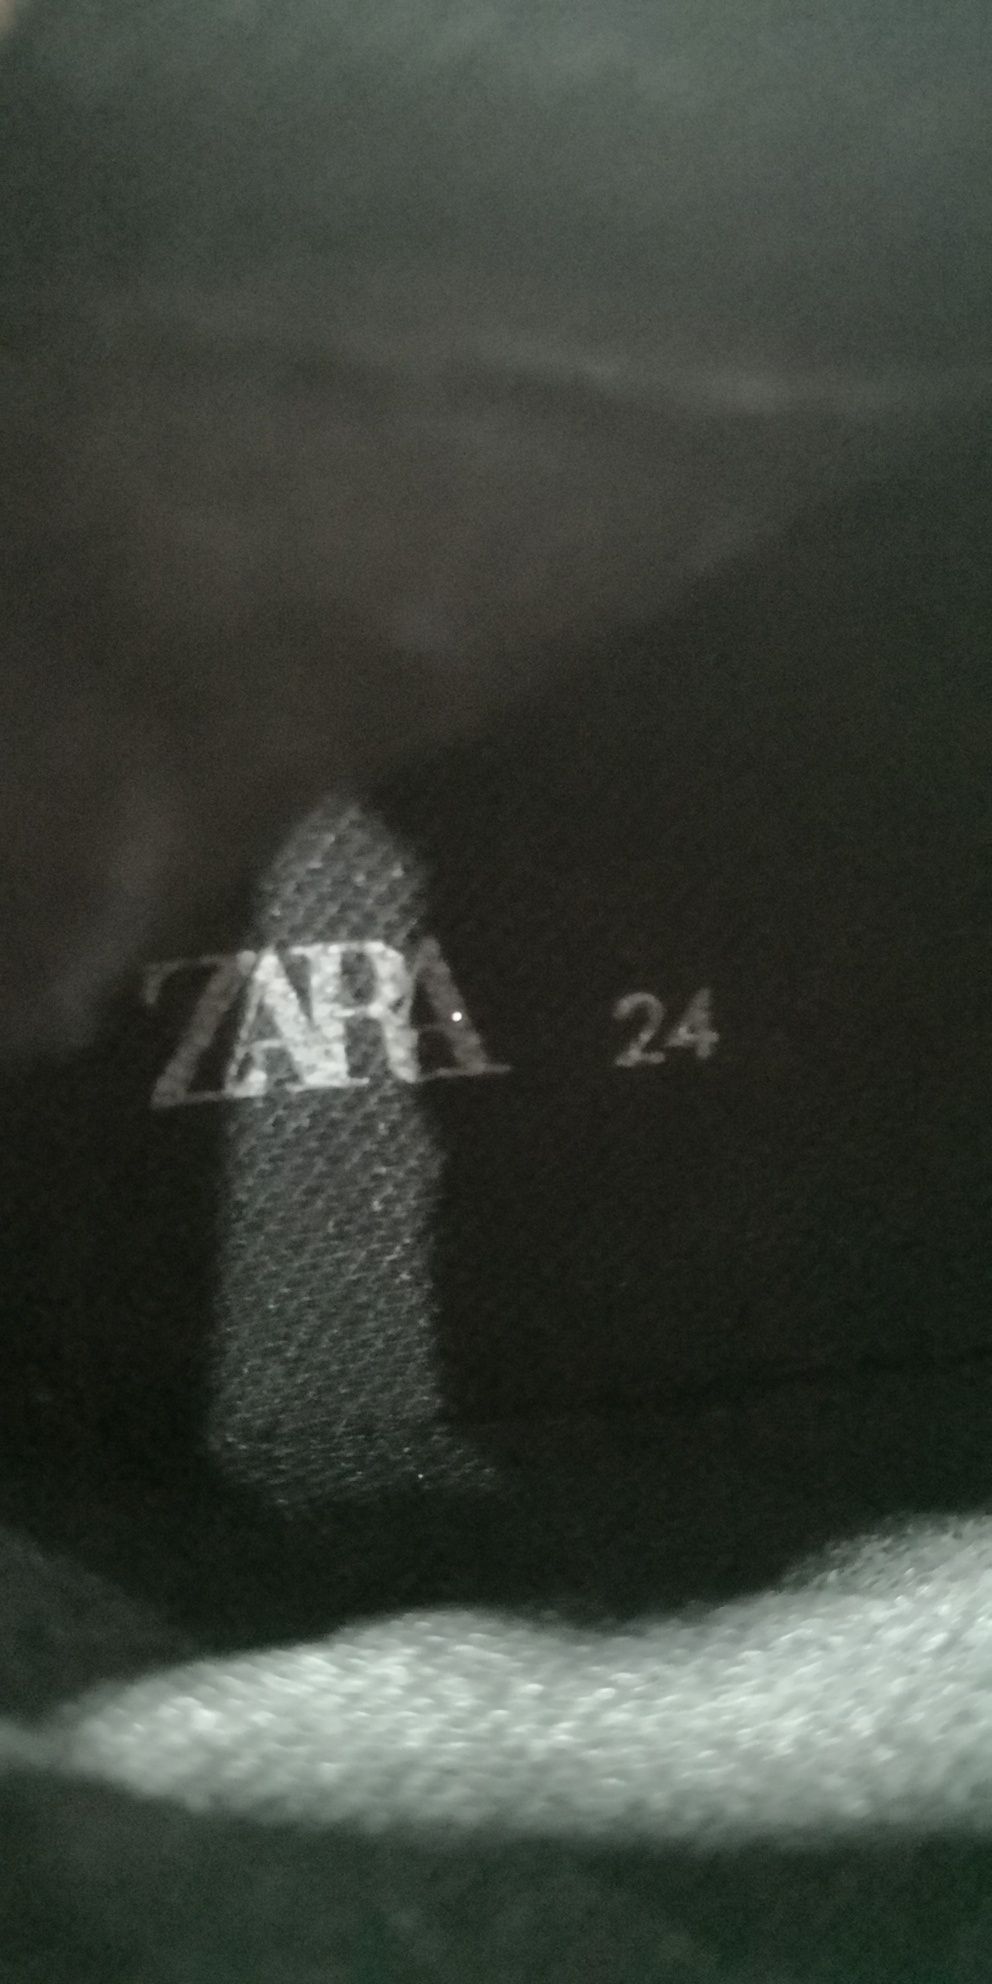 Ghete Zara 24 băieți.